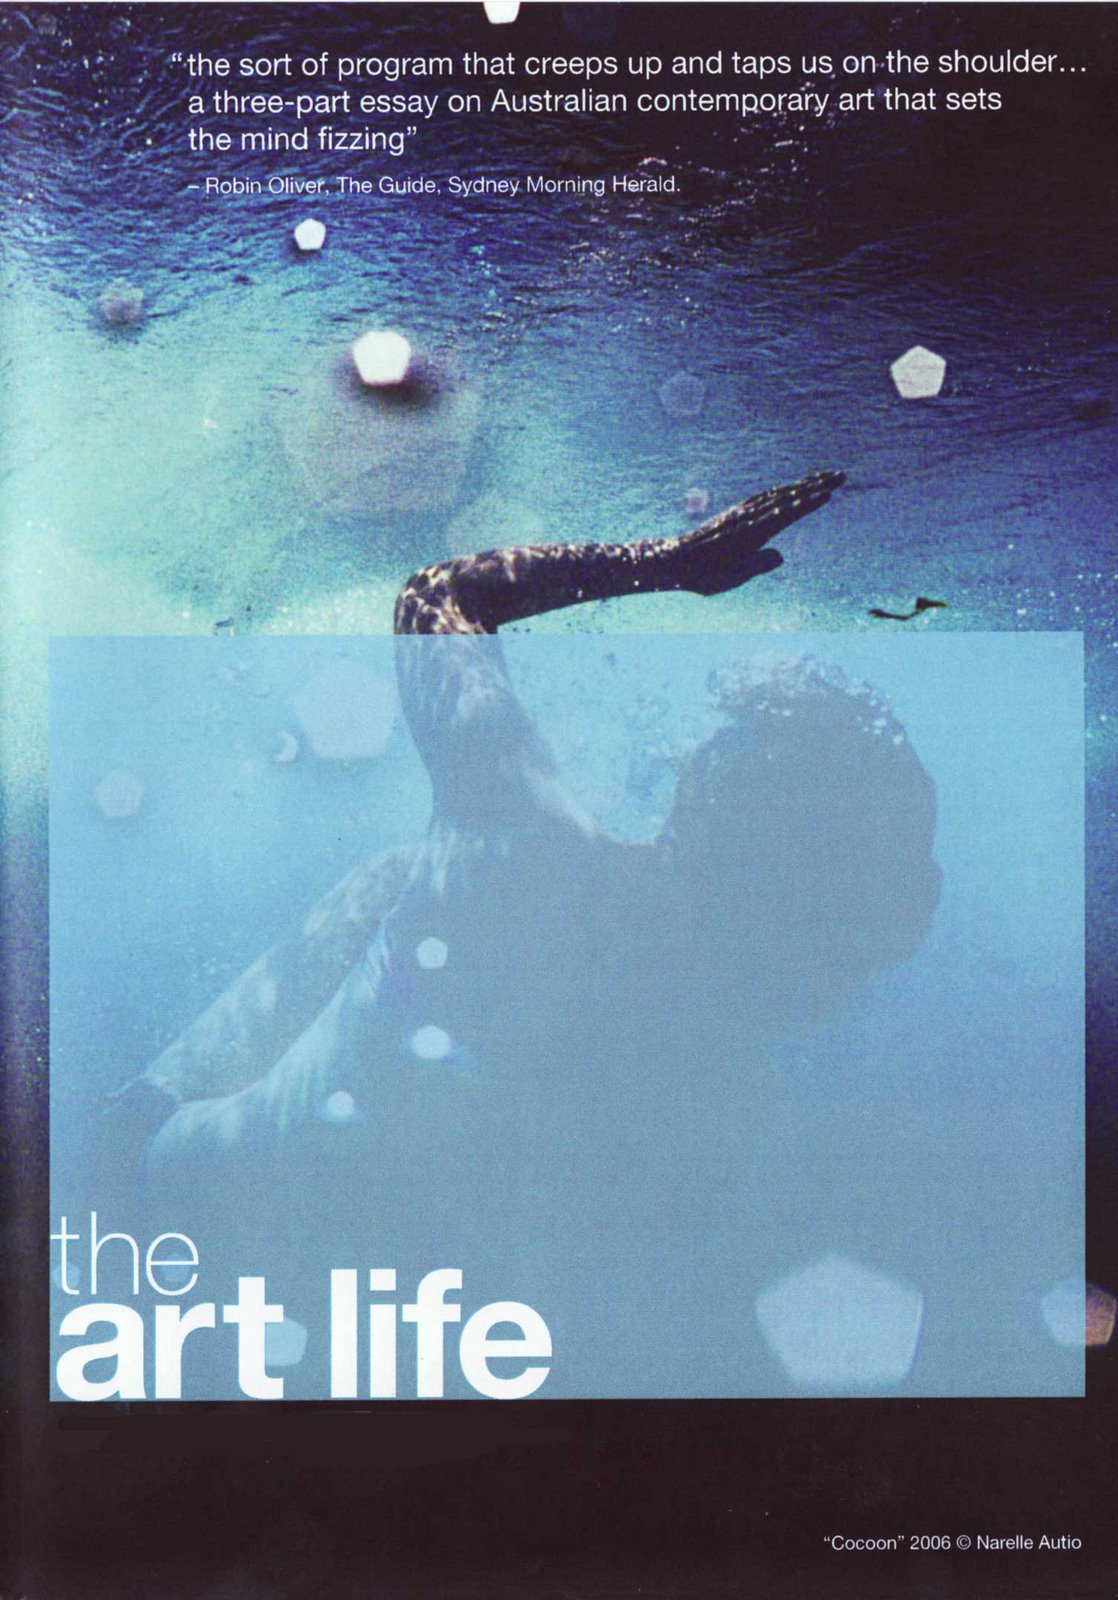 [art-life-DVD-cover.jpg]